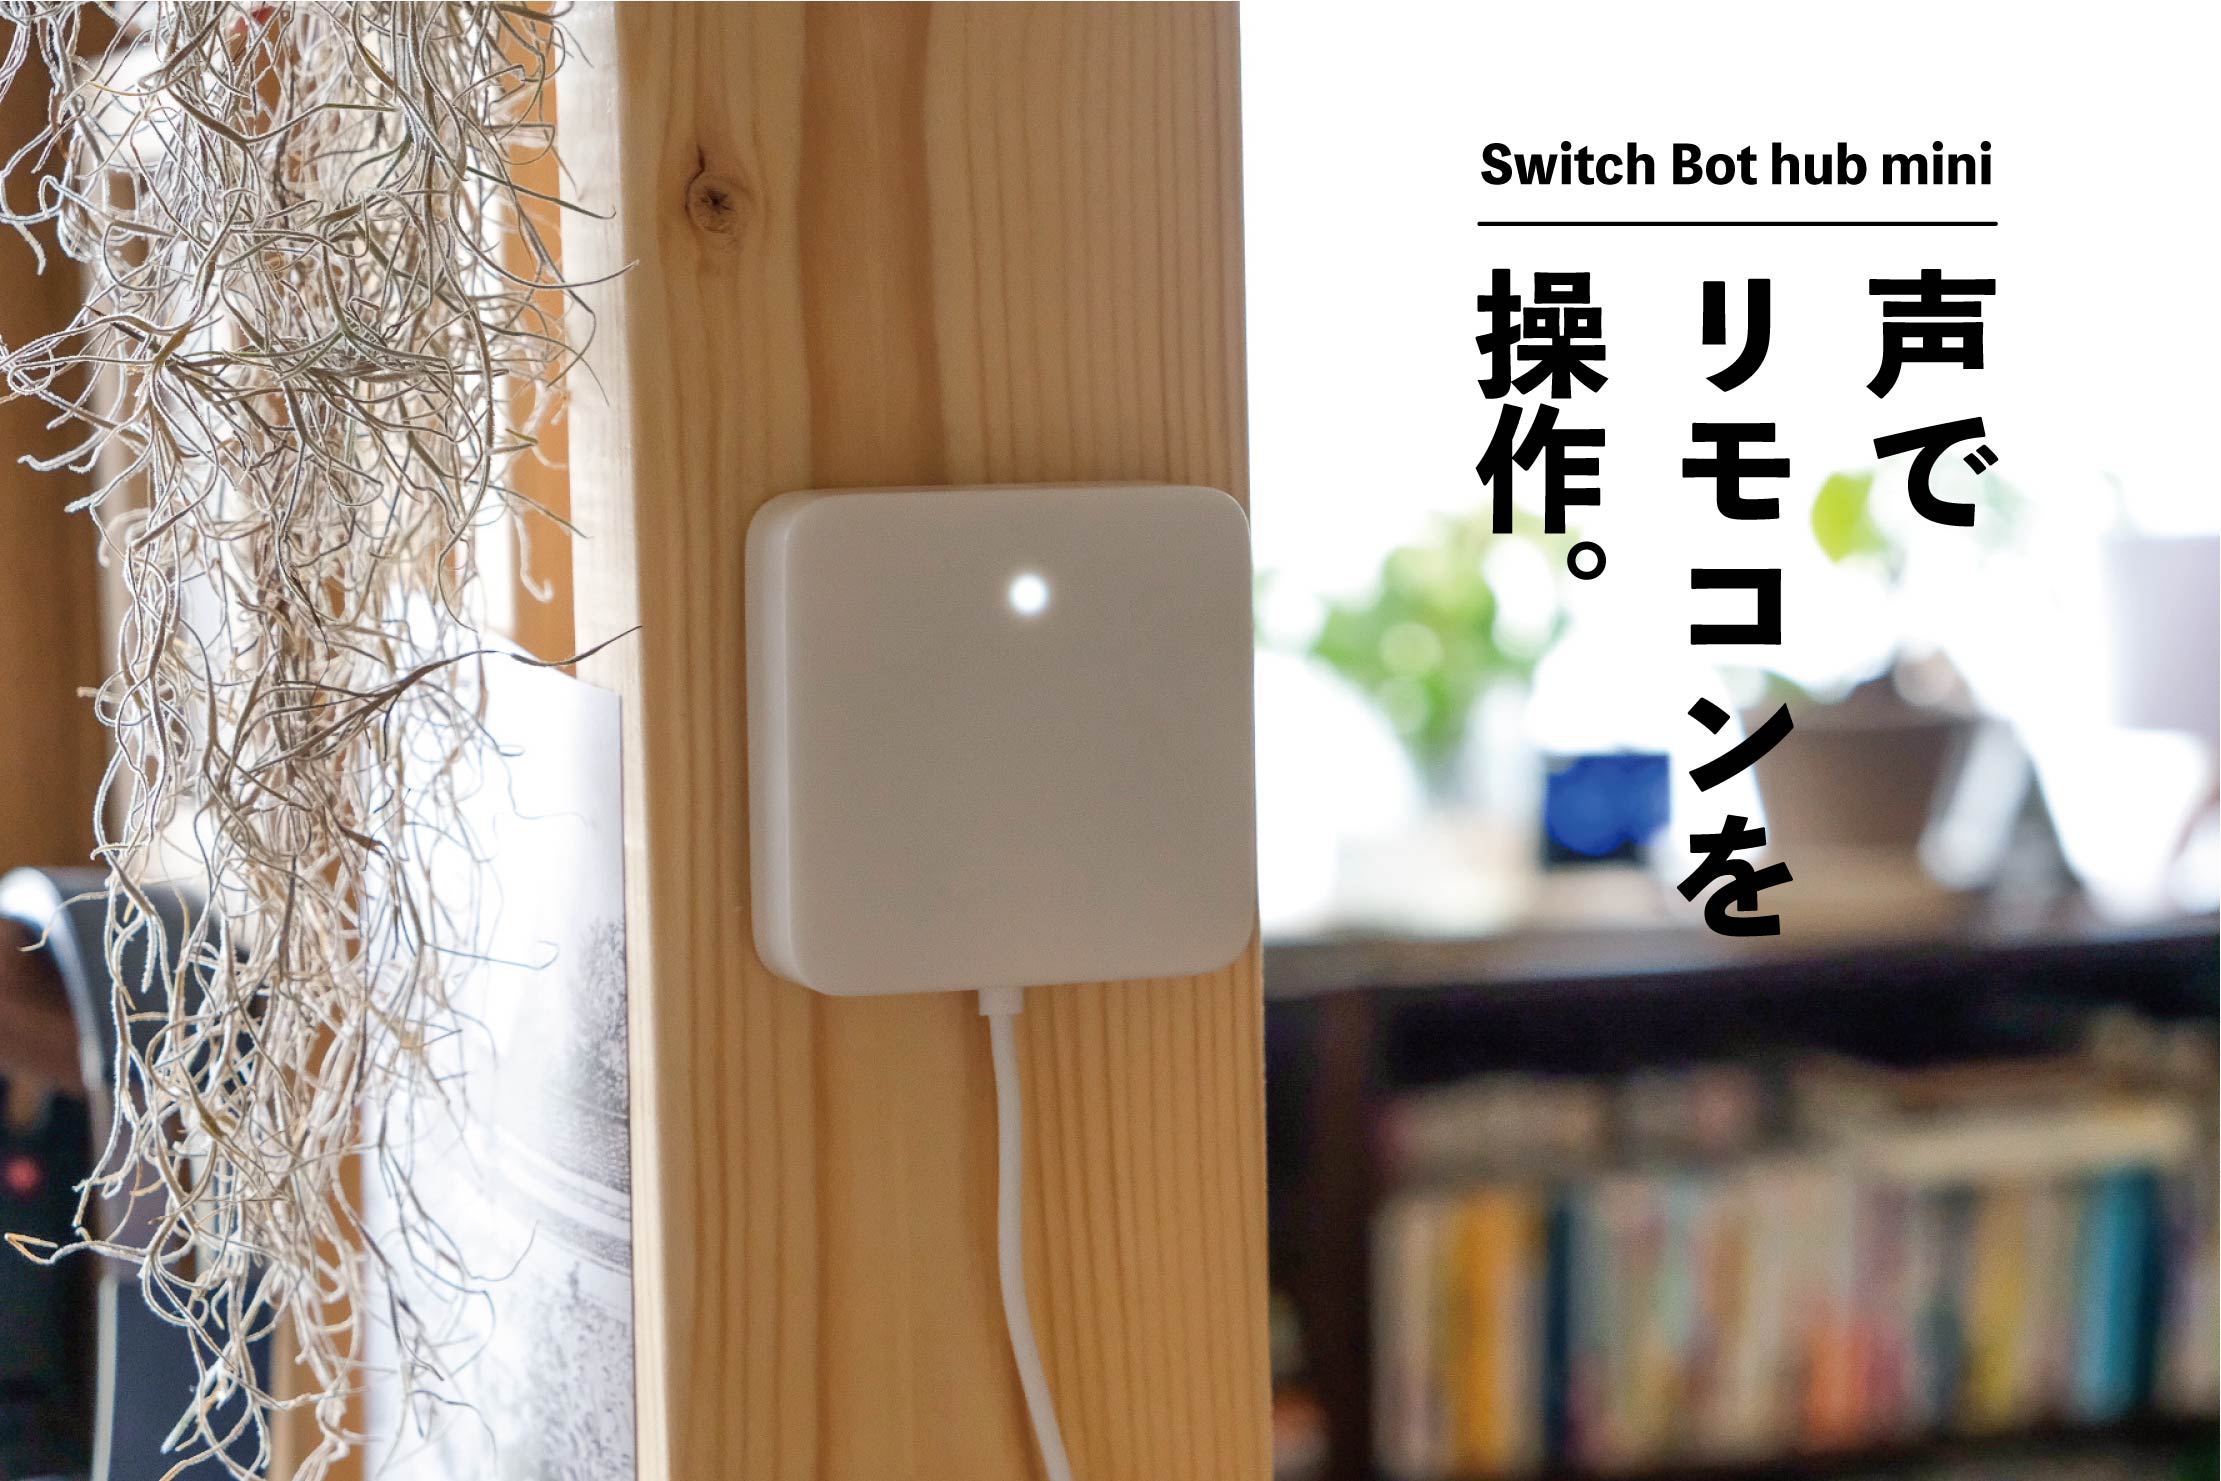 Switch Botハブミニで赤外線リモコンをアレクサで操作。エアコンや天井照明も音声操作が可能になりました。｜暮らしとインテリア SUMURO(スムロ)